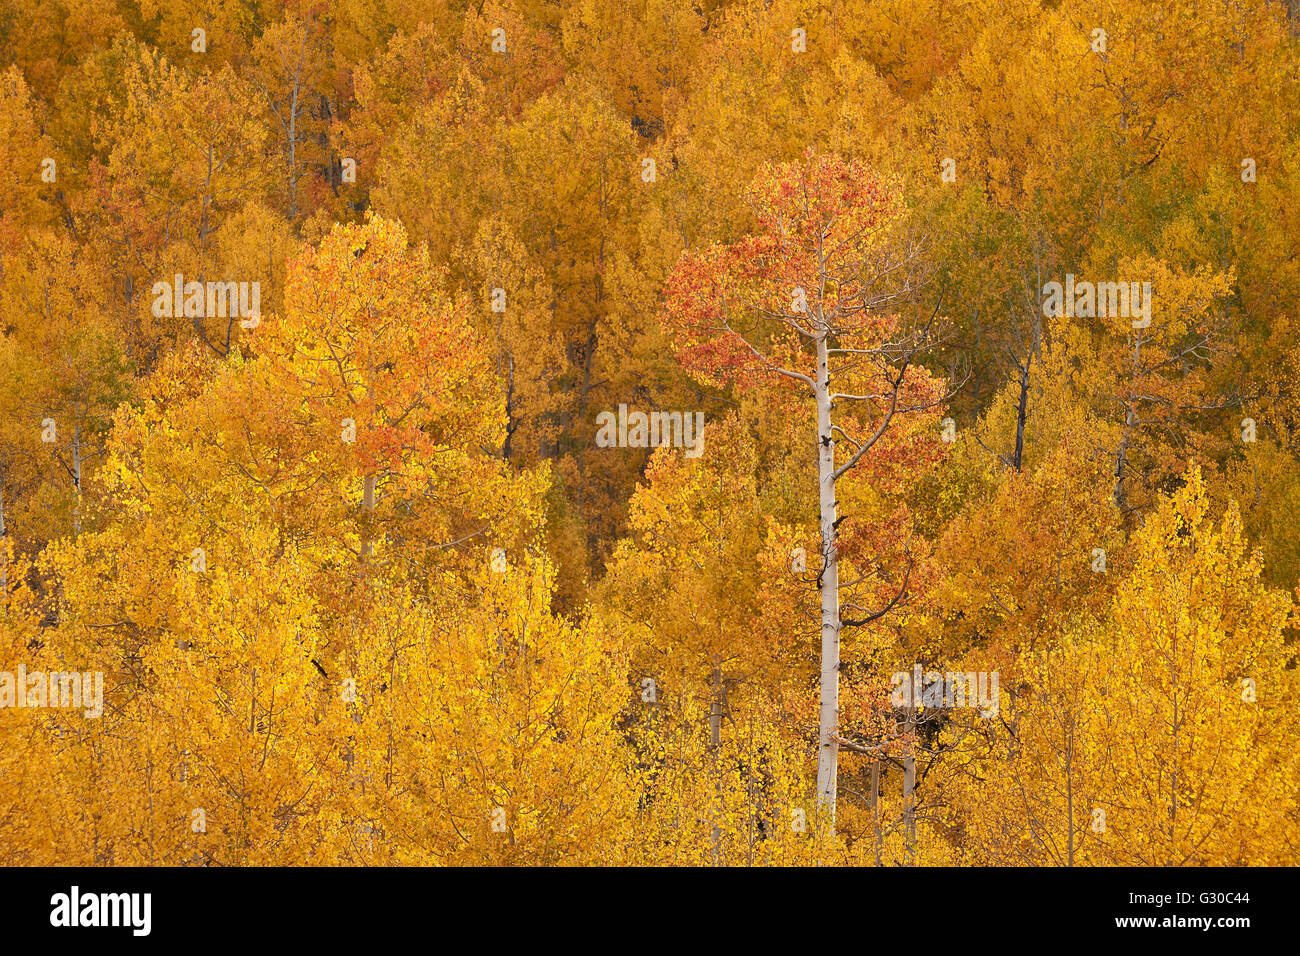 Amarillo y naranja en otoño, Aspen Uncompahgre National Forest, Colorado, Estados Unidos de América, América del Norte Foto de stock